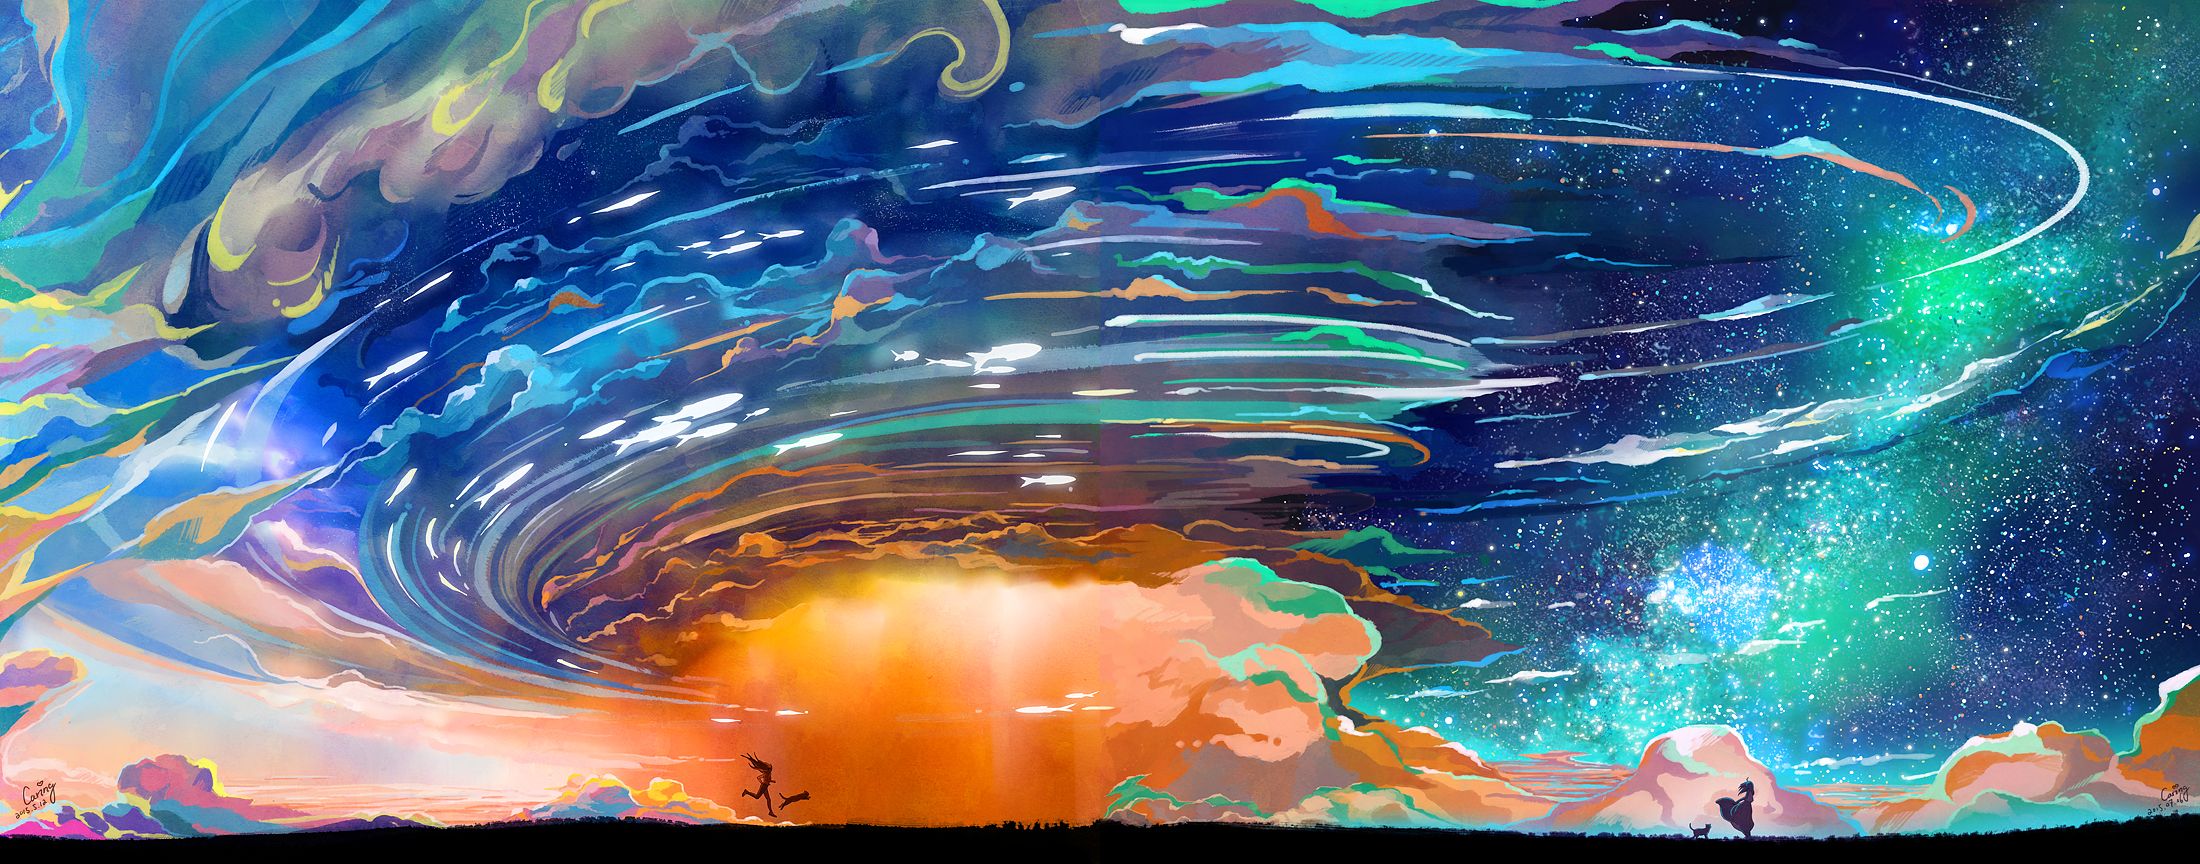 Download mobile wallpaper Landscape, Fantasy, Sky, Light, Cat, Storm, Cloud, Star for free.